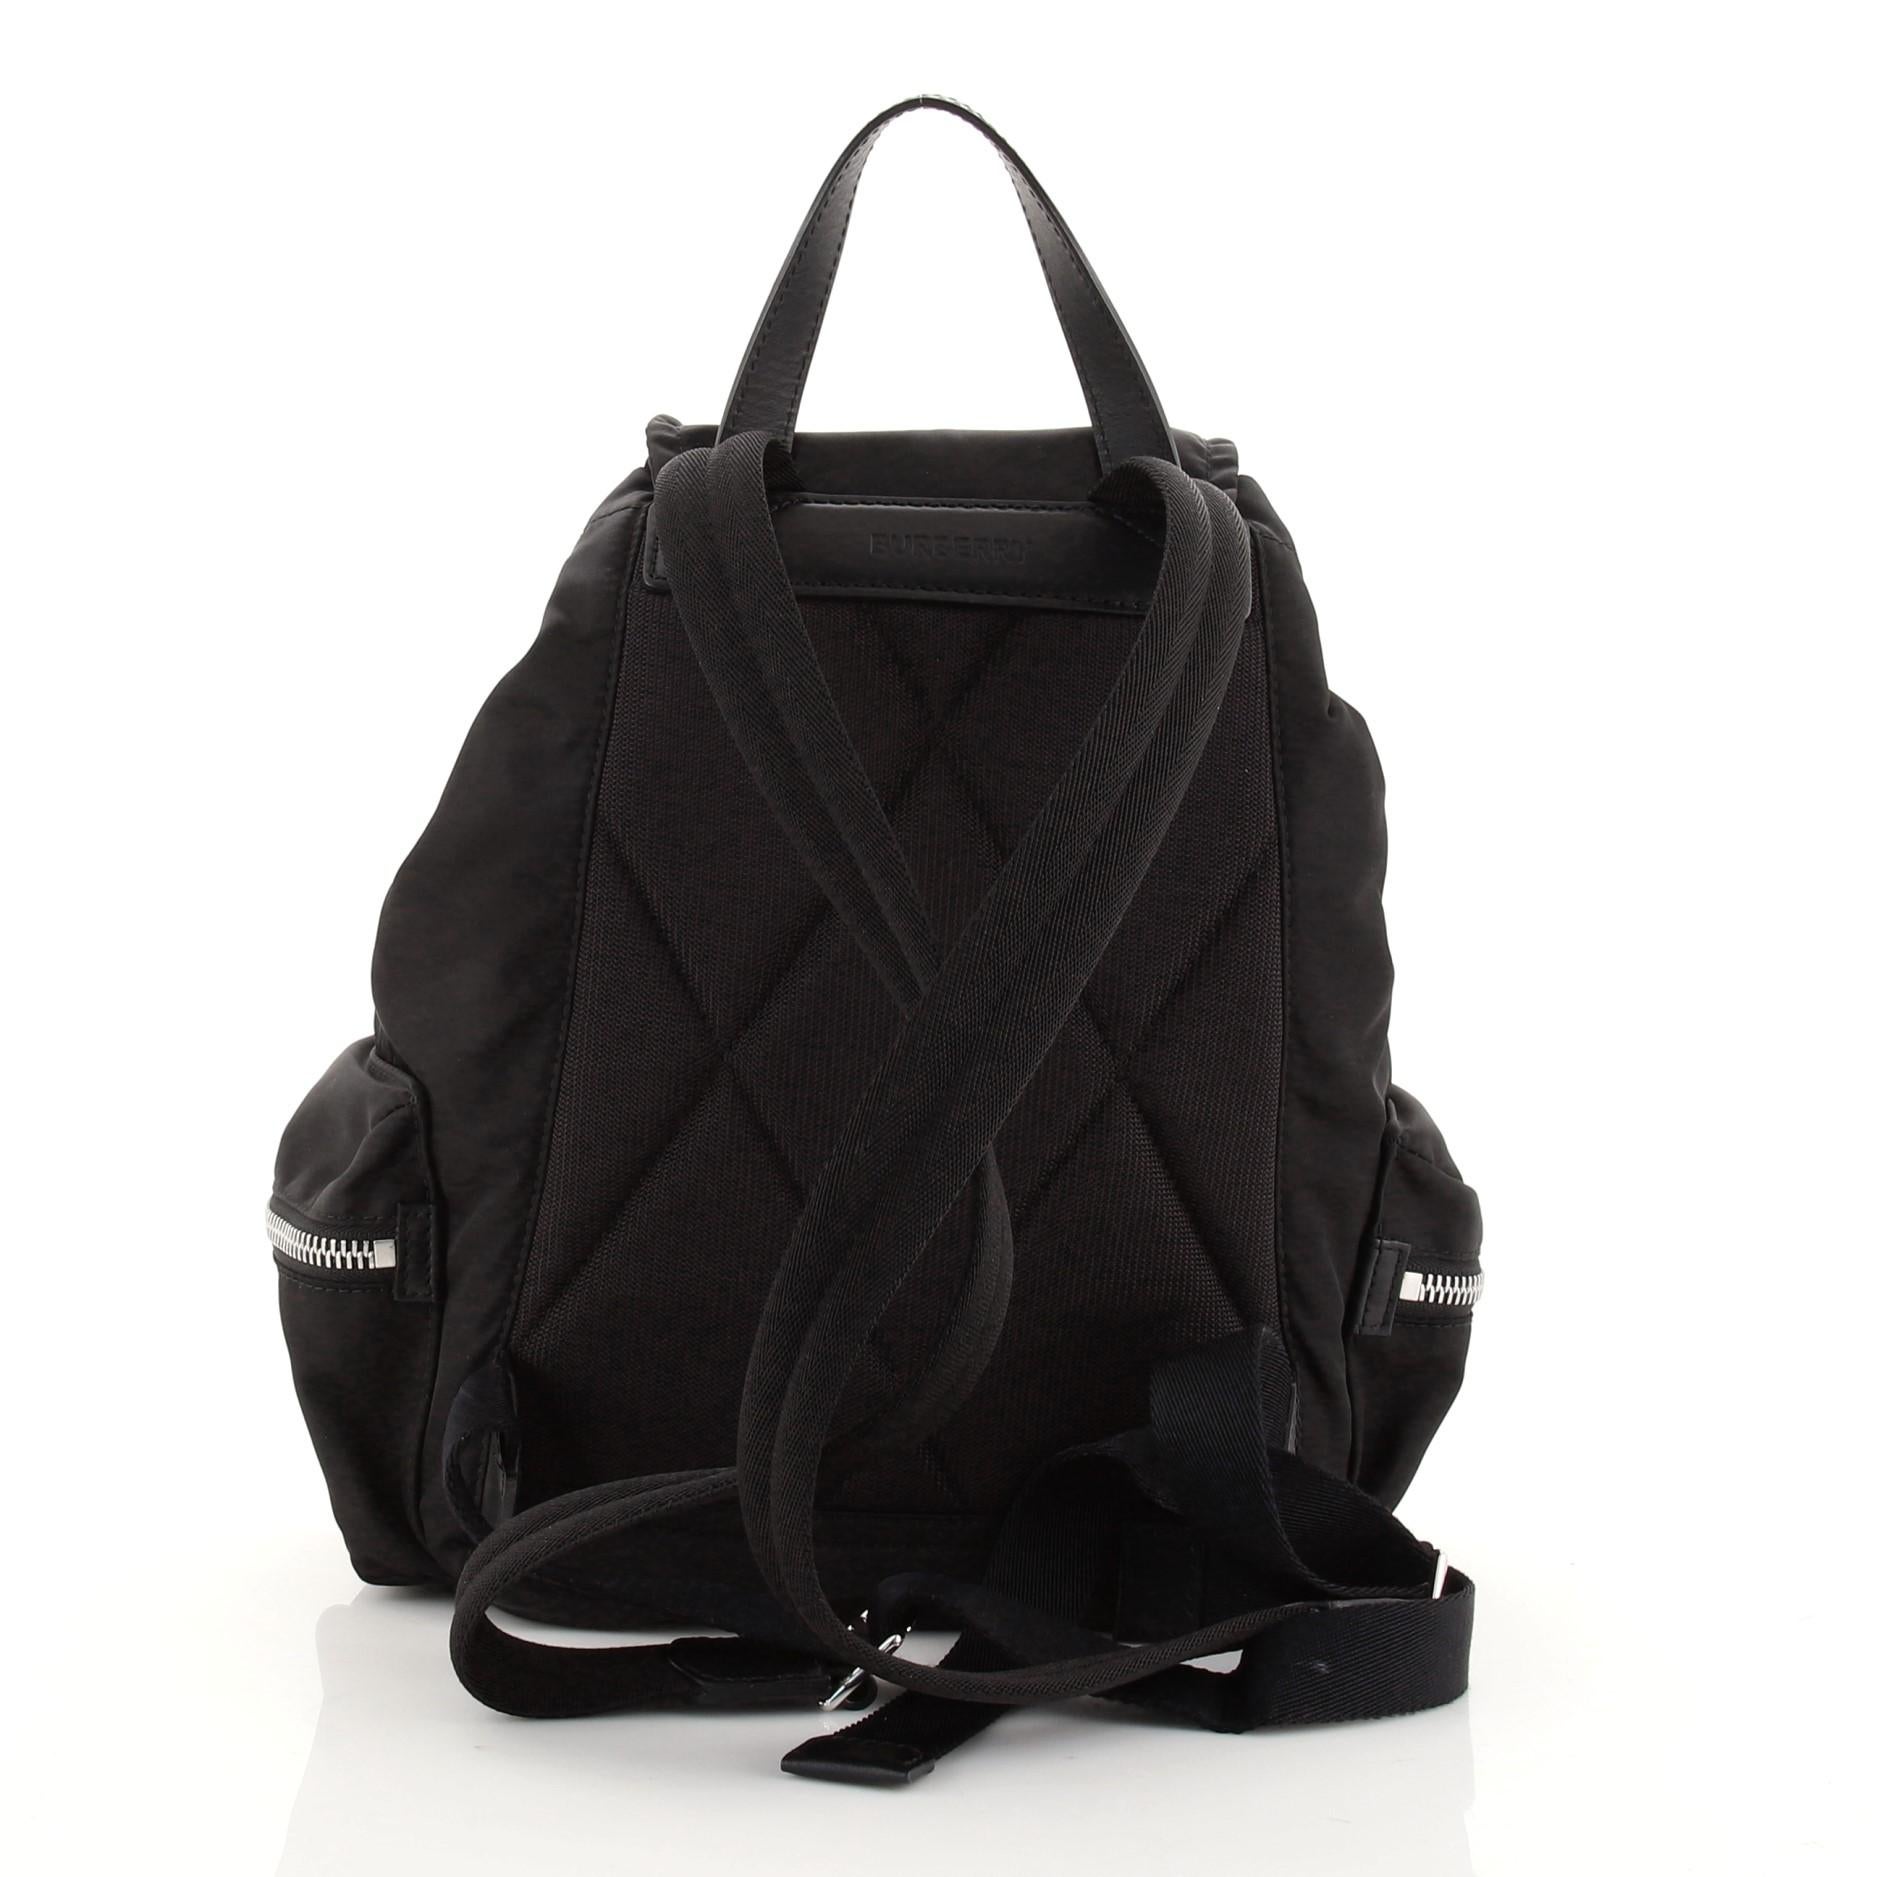 Burberry Black Nylon Leather Medium Rucksack Backpack


67971MSC